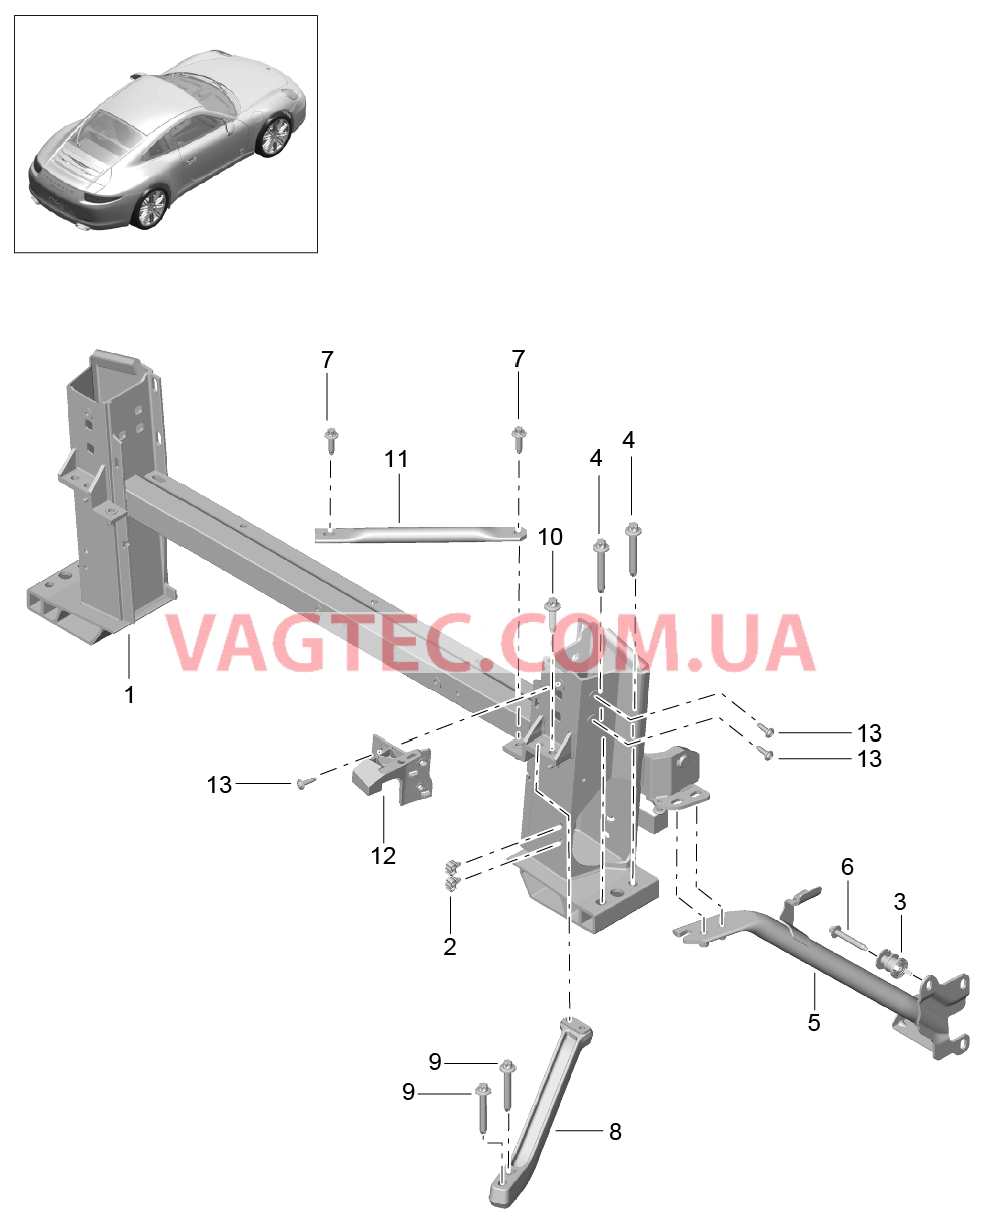 811-072 Несущий элемент, и, Детали
						
						TARGA для PORSCHE 911.Carrera 2012-2016